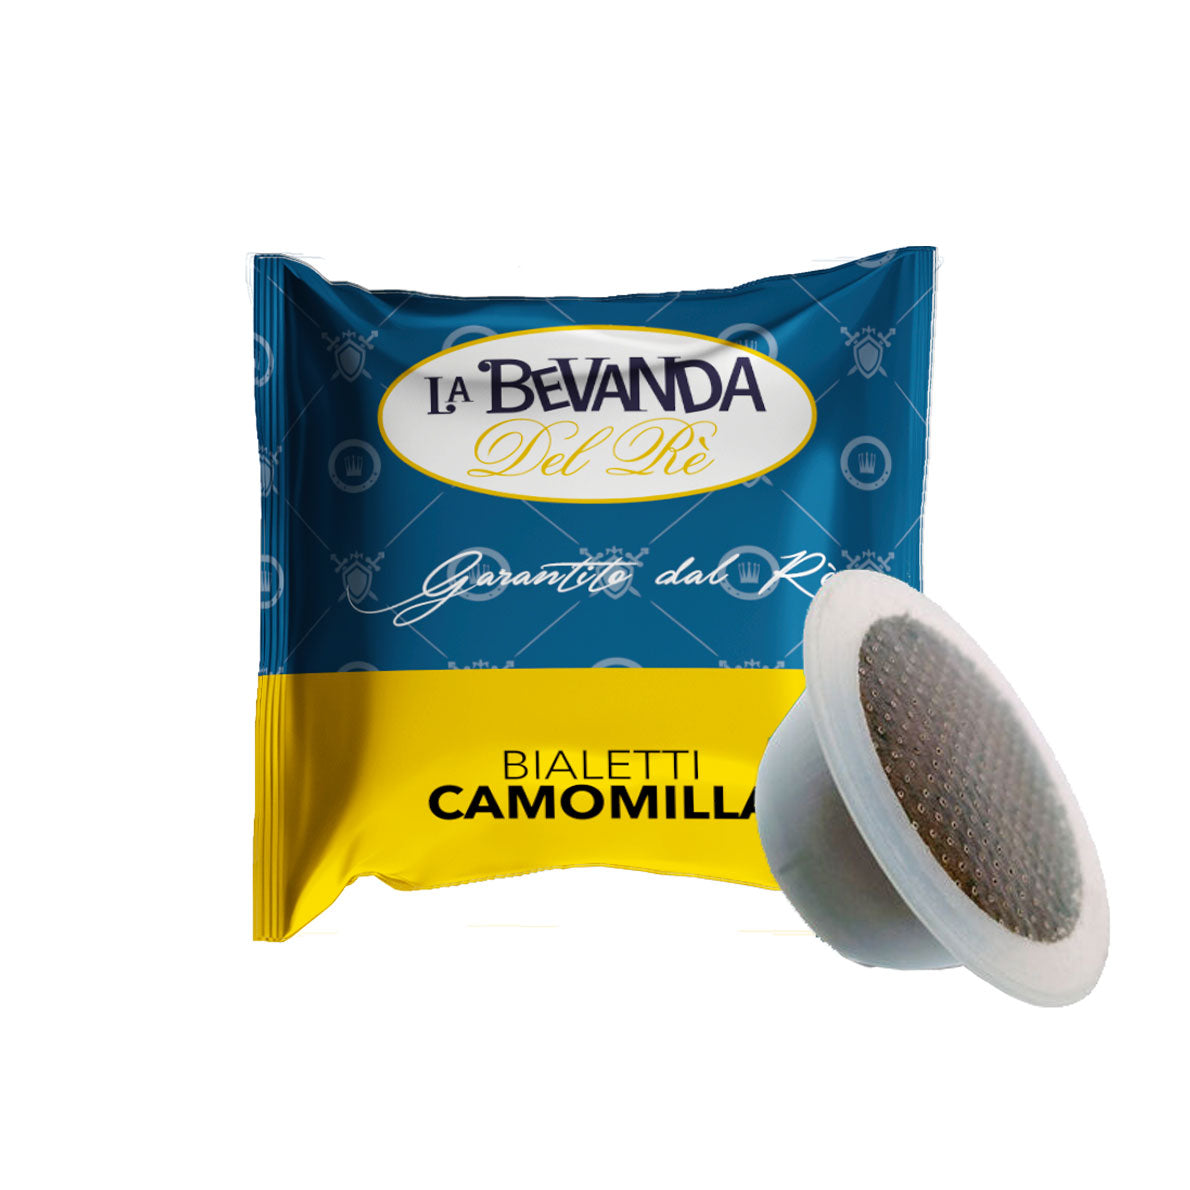 50 Capsule Bialetti - Camomilla